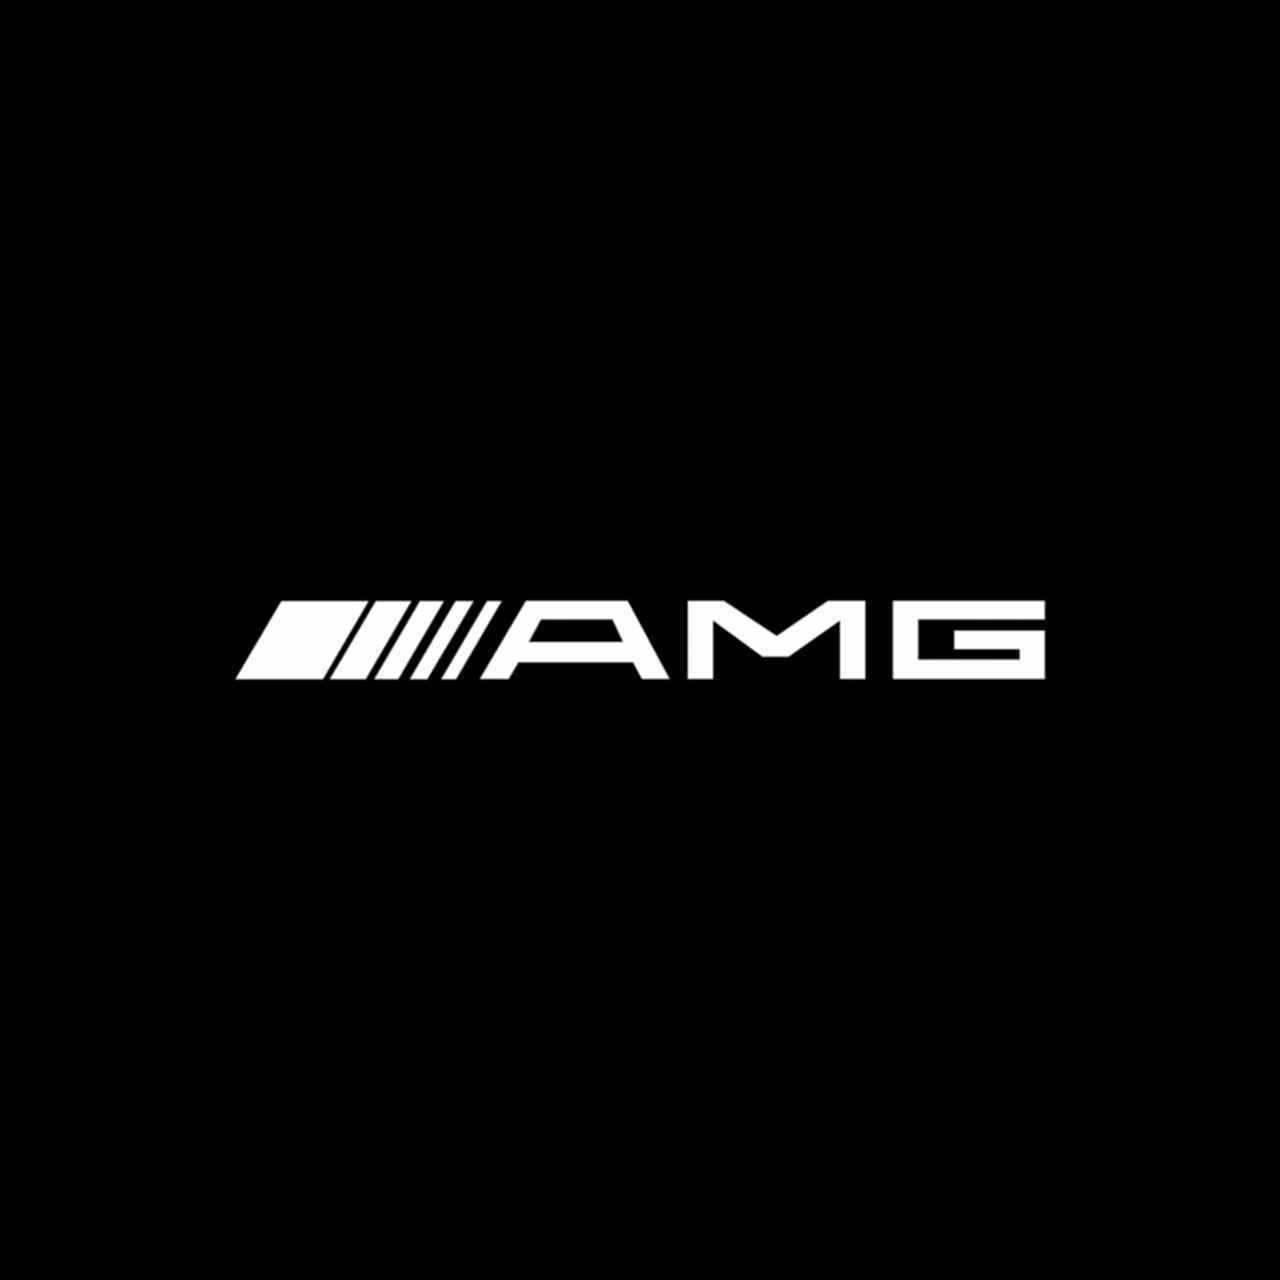 Mercedes Amg Logo Vinyl Decal